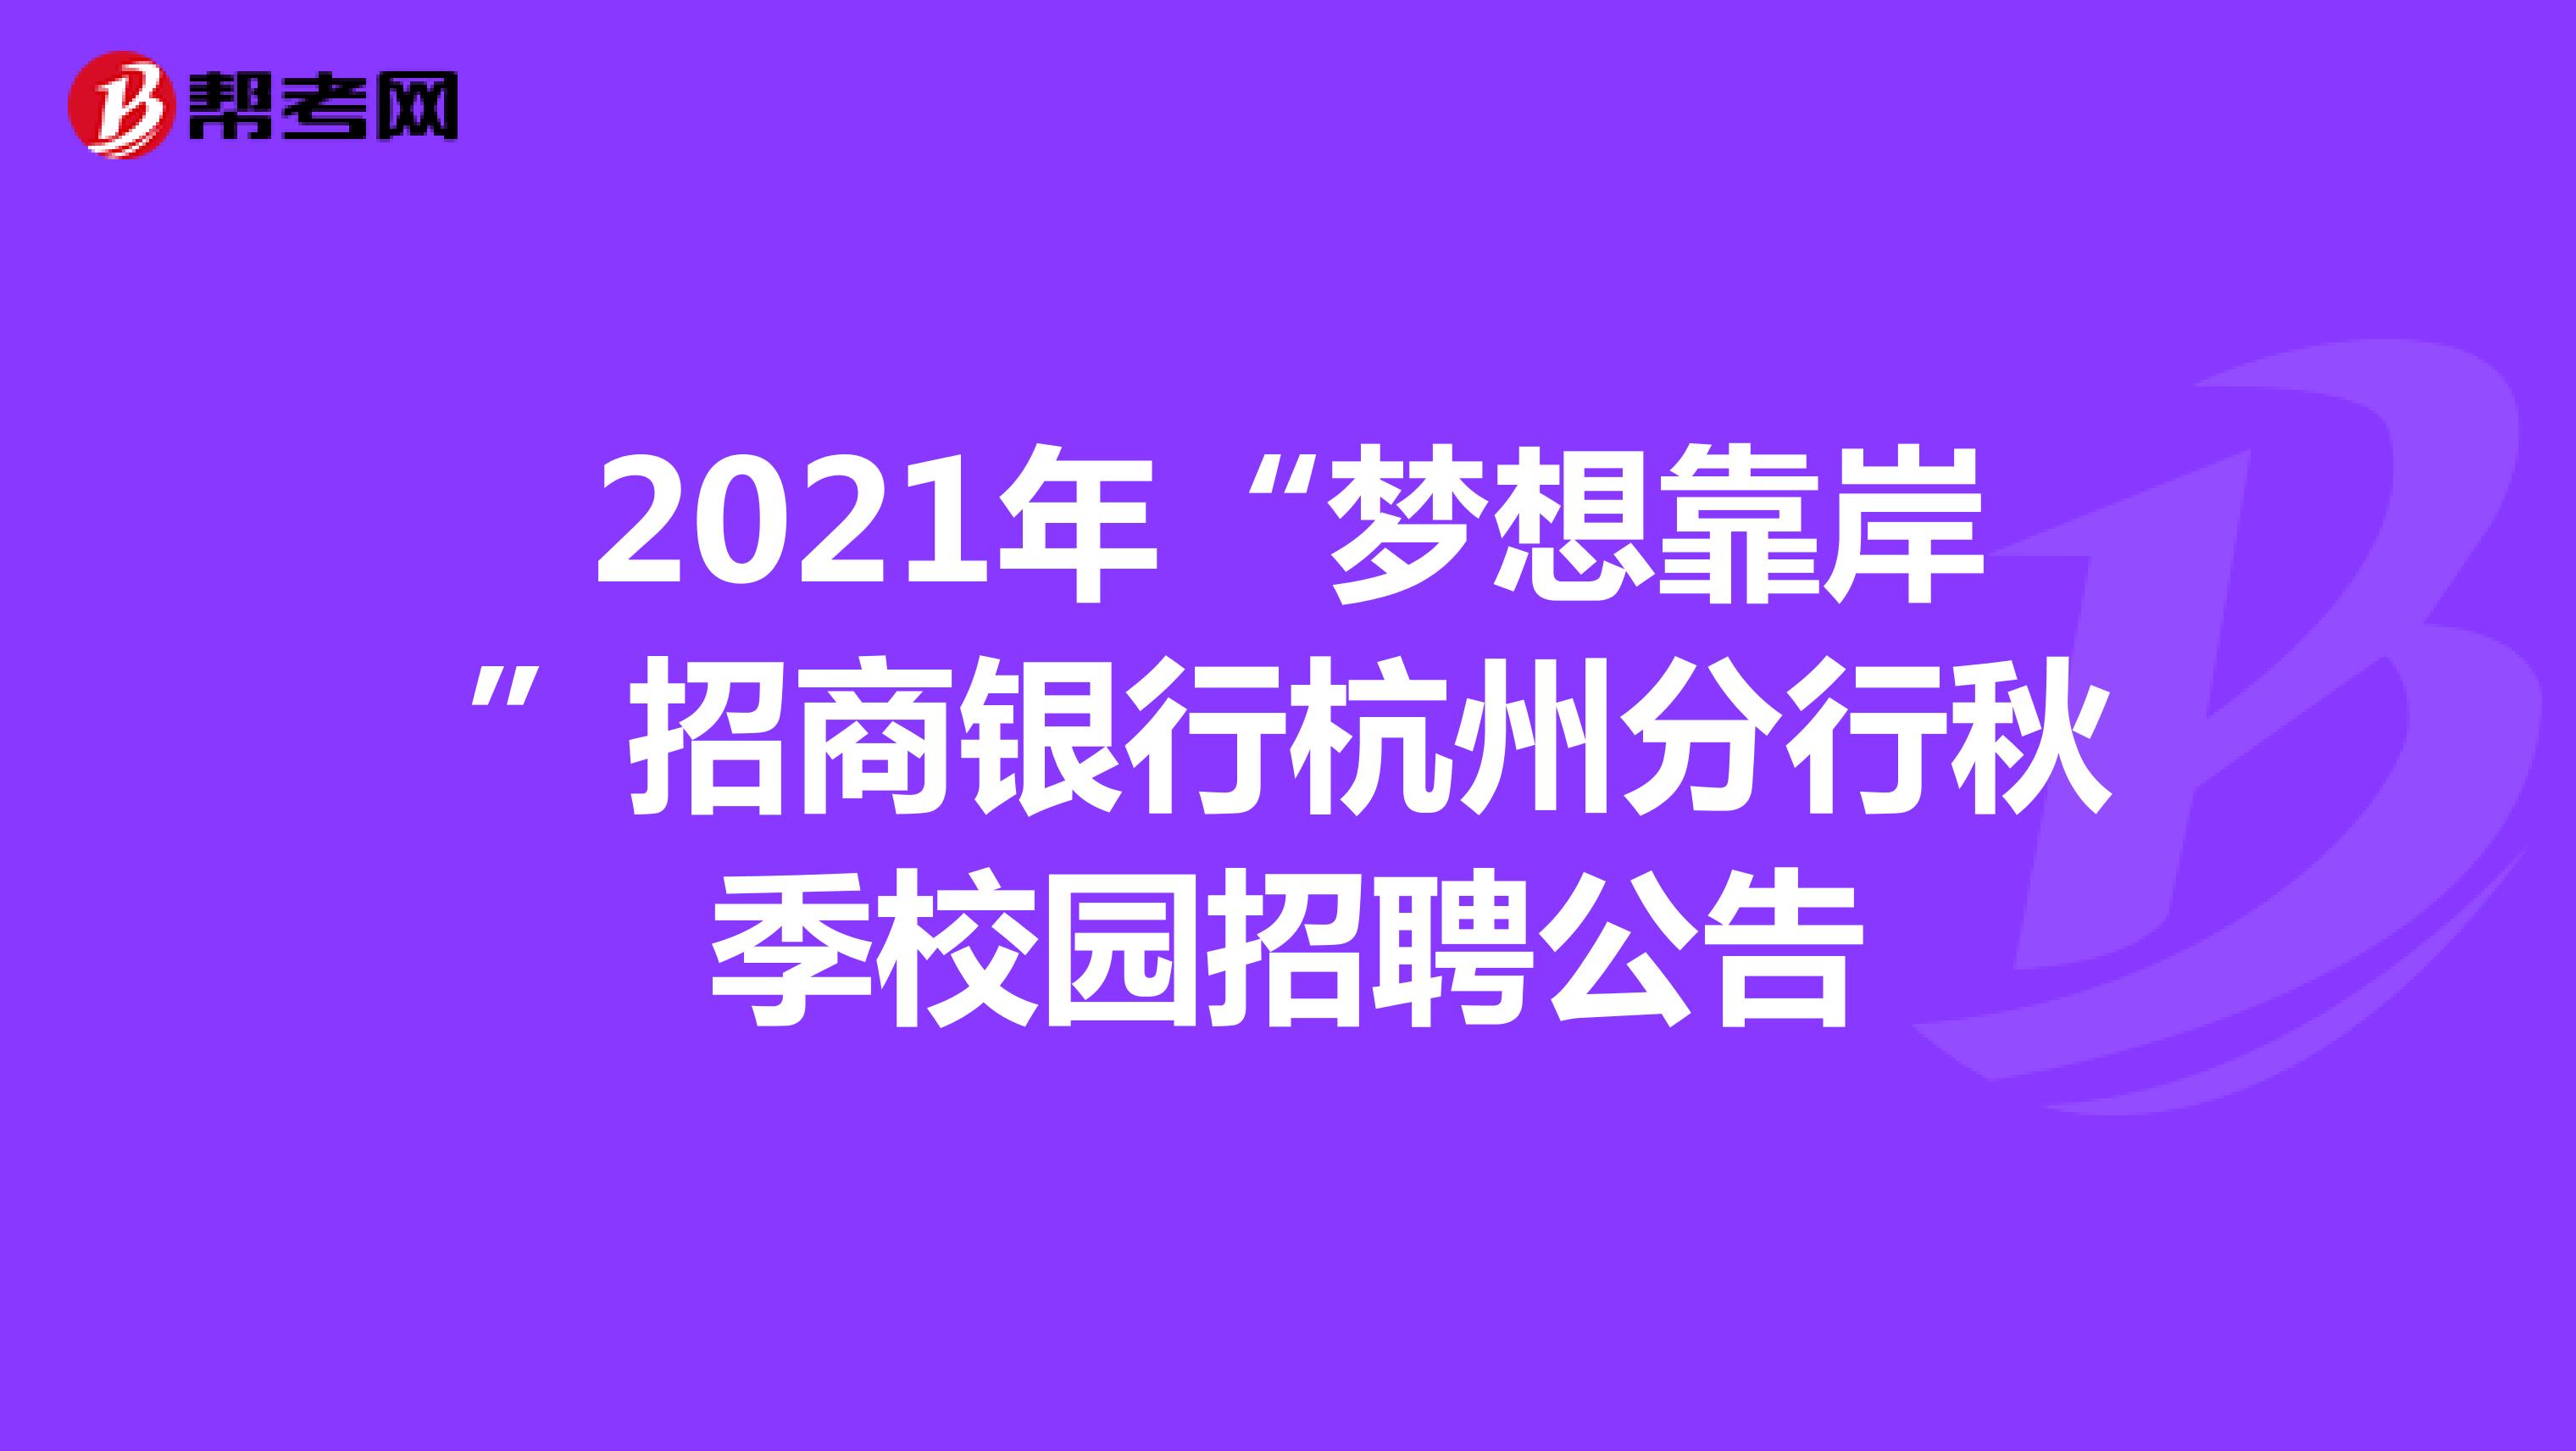 2021年“梦想靠岸”招商银行杭州分行秋季校园招聘公告